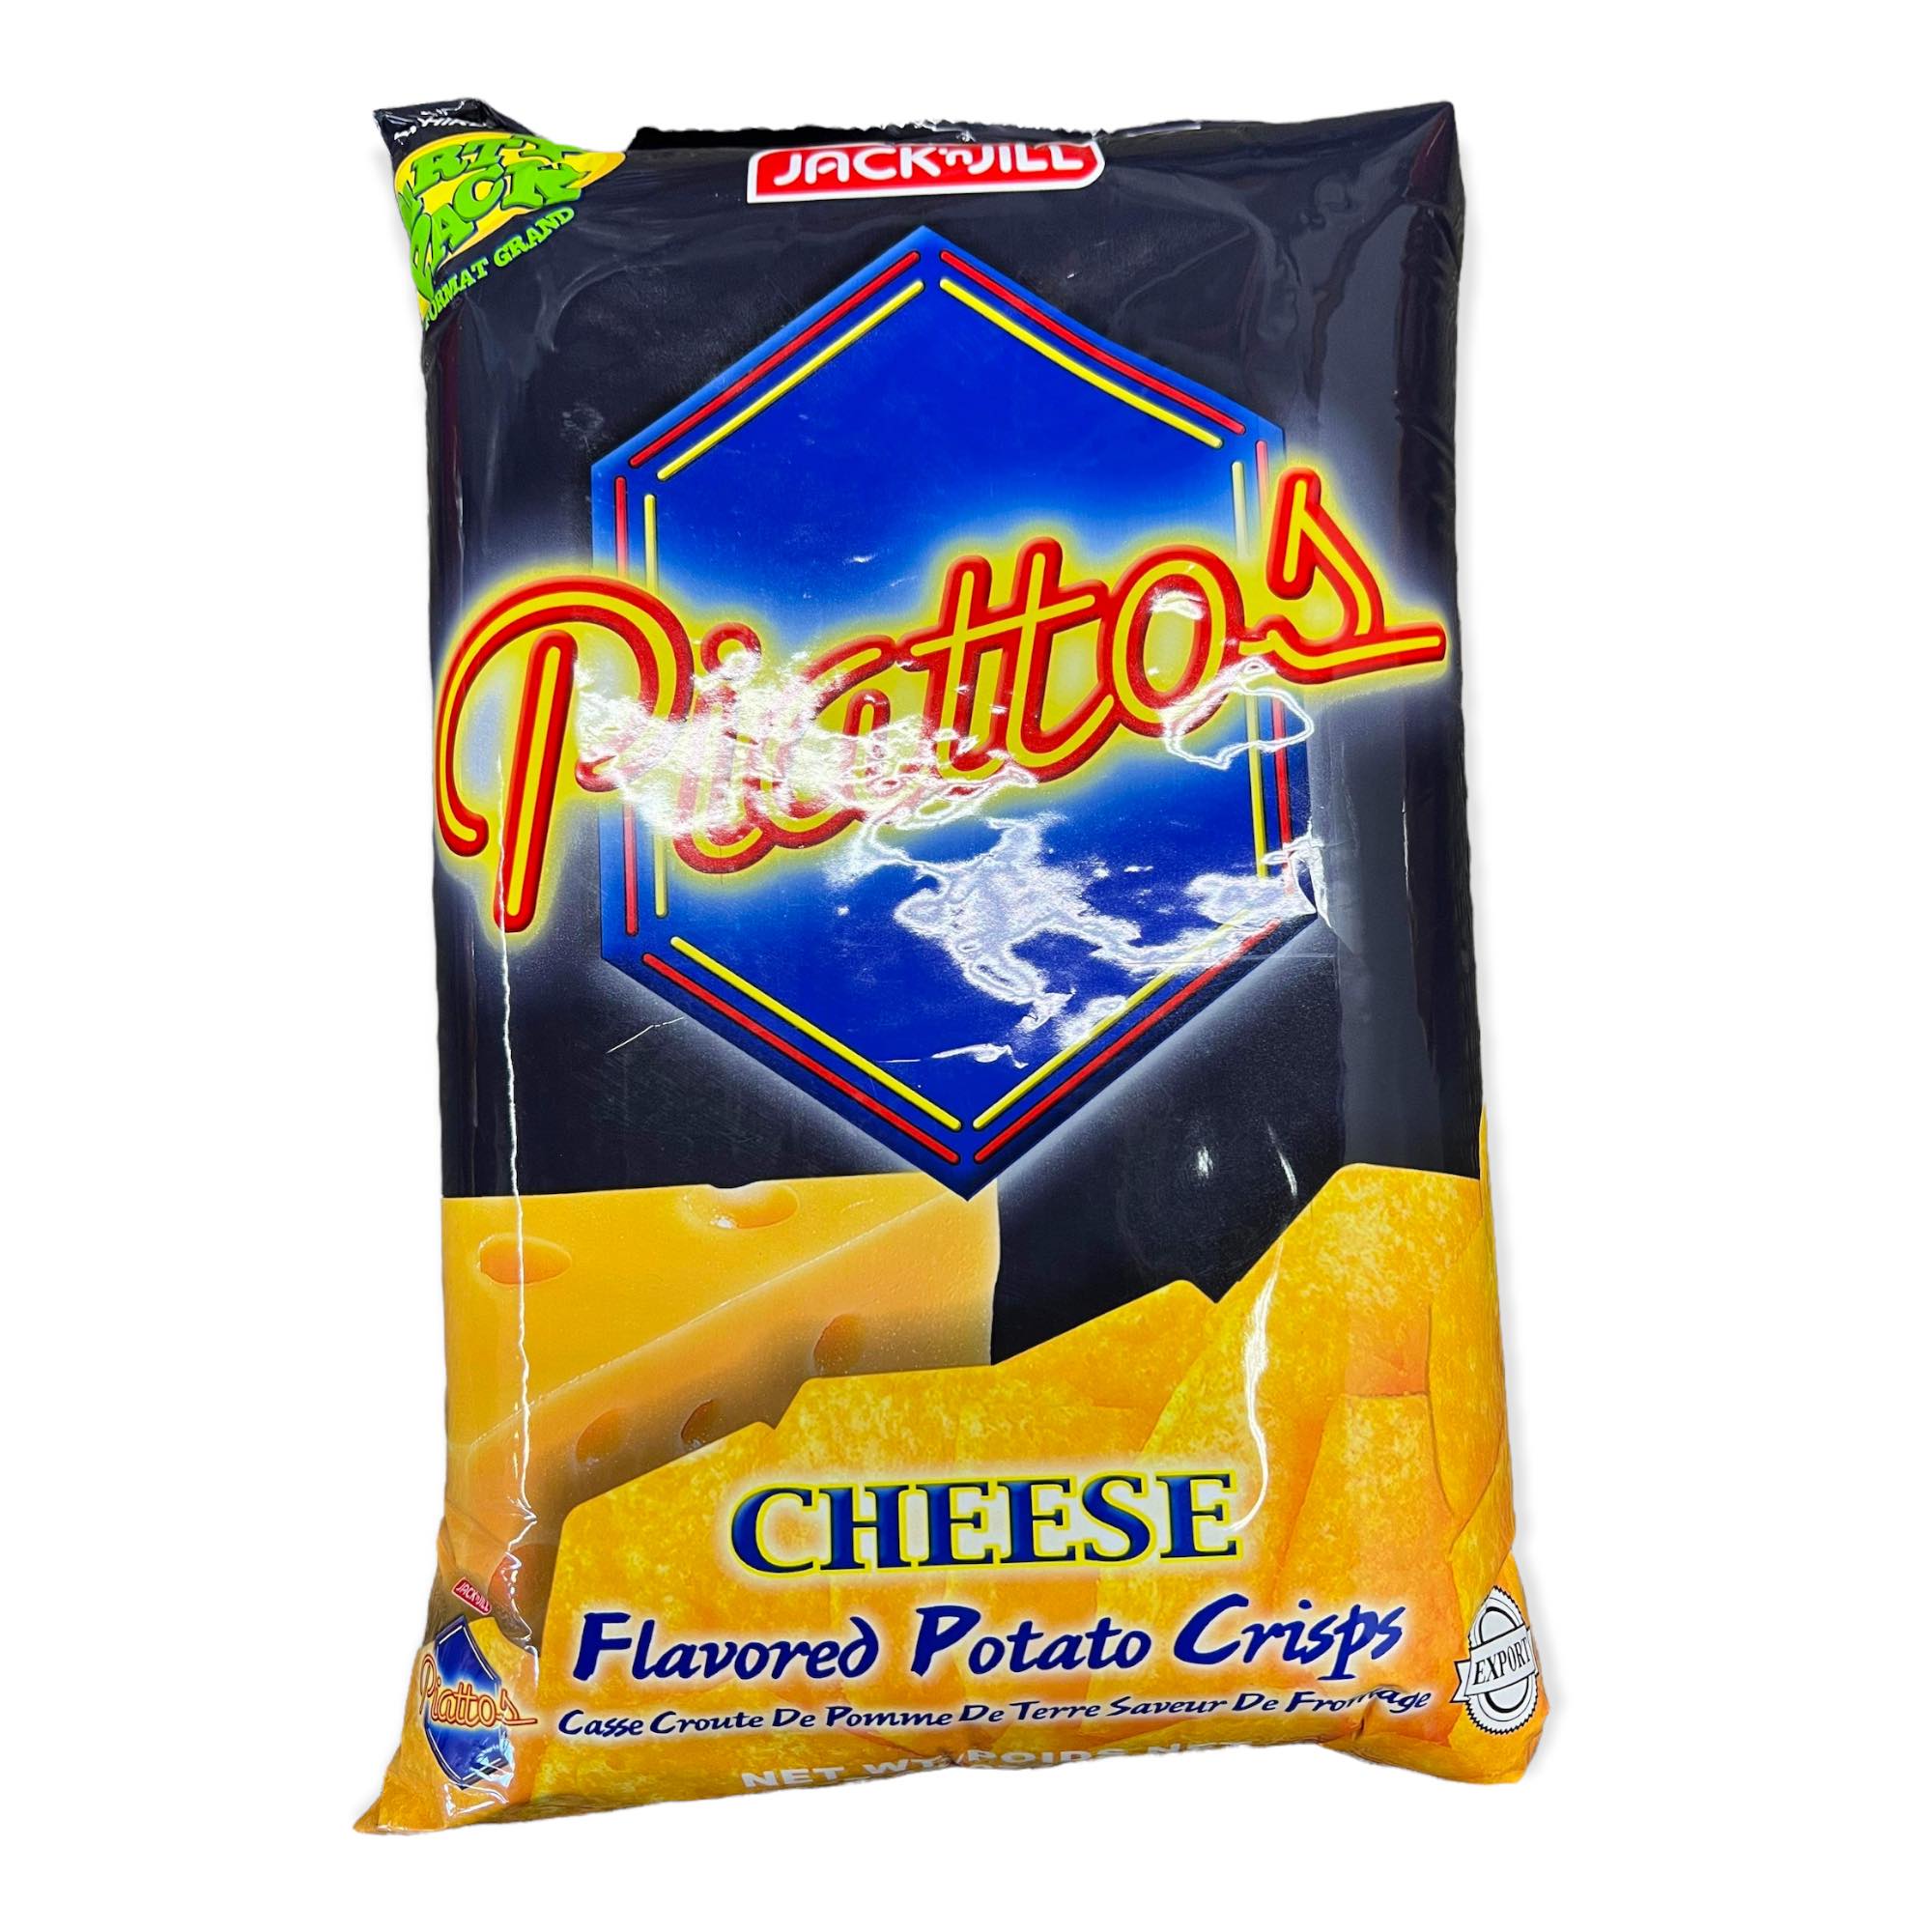 Jack 'n Jill - Piattos Crisp Cheese - Party Pack - 7.94 OZ